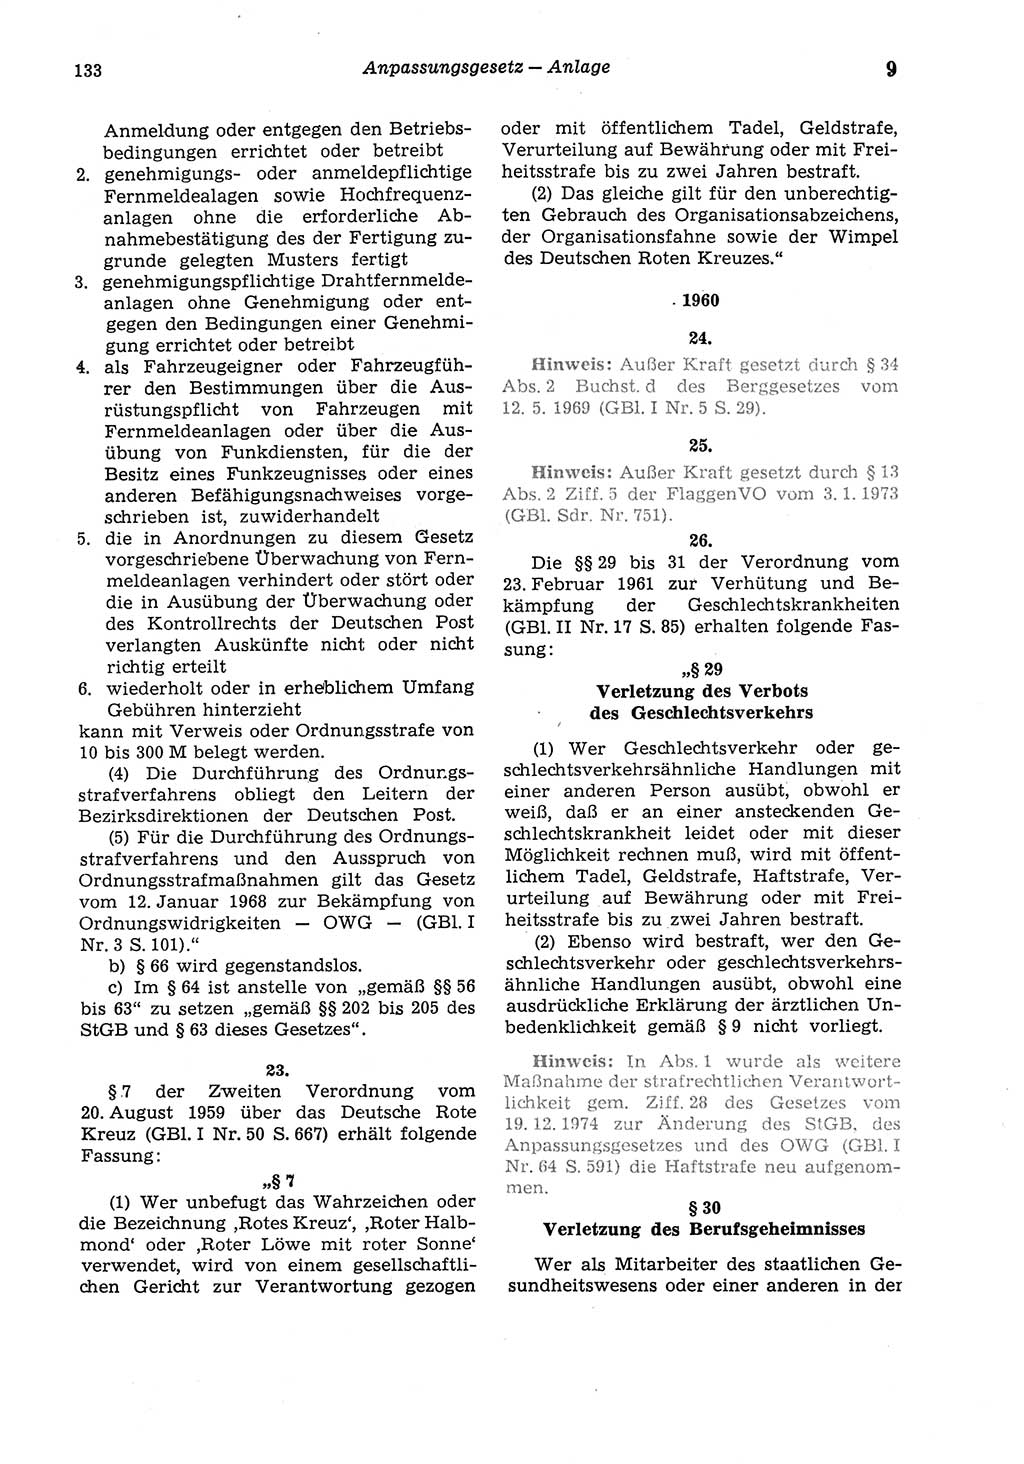 Strafgesetzbuch (StGB) der Deutschen Demokratischen Republik (DDR) und angrenzende Gesetze und Bestimmungen 1975, Seite 133 (StGB DDR Ges. Best. 1975, S. 133)